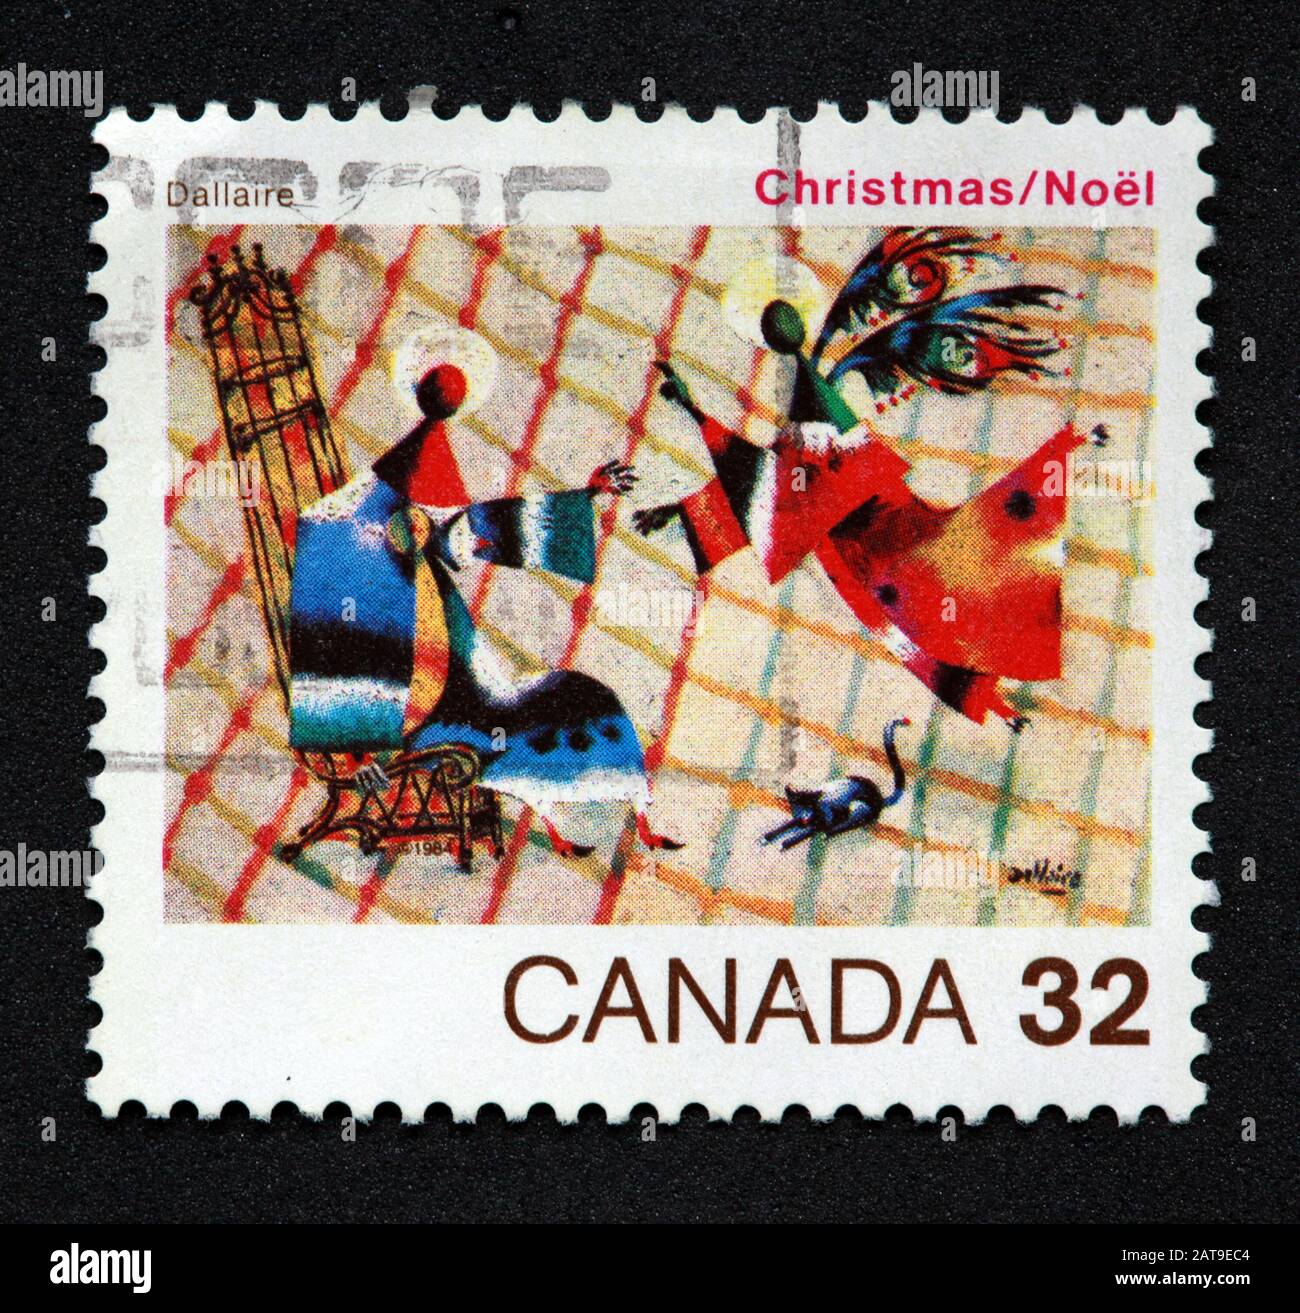 Kanadische Briefmarke, Canada Stamp, Canada Post, gebrauchte Briefmarke, Kanada 32c, Weihnachten, Noel, Dallaire, Engel Stockfoto